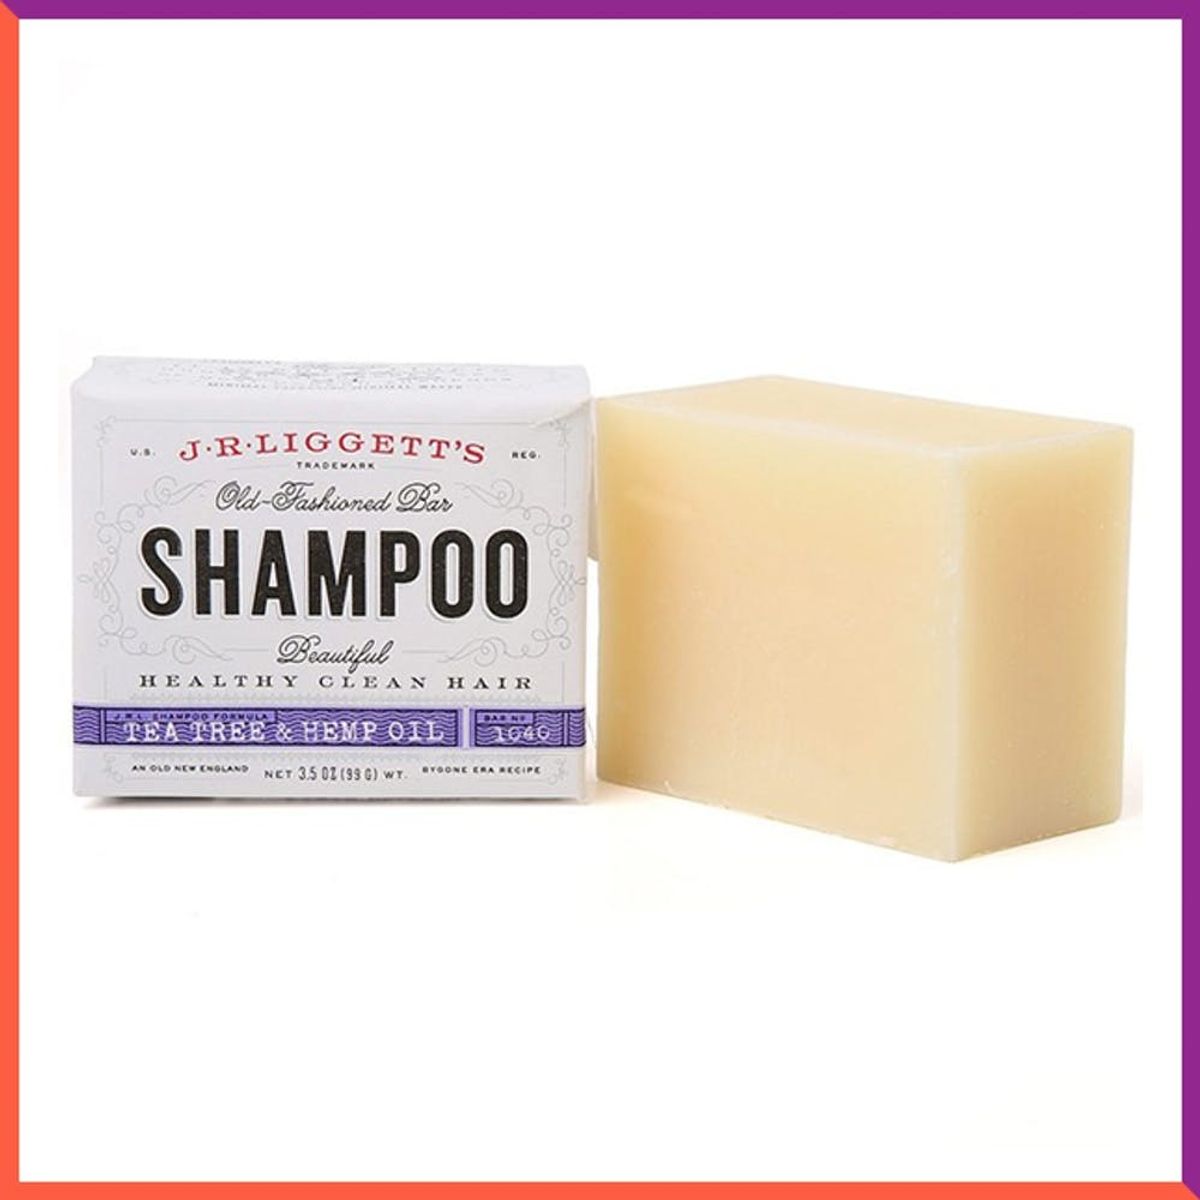 12 Shampoo Bars That Make Traveling So Easy